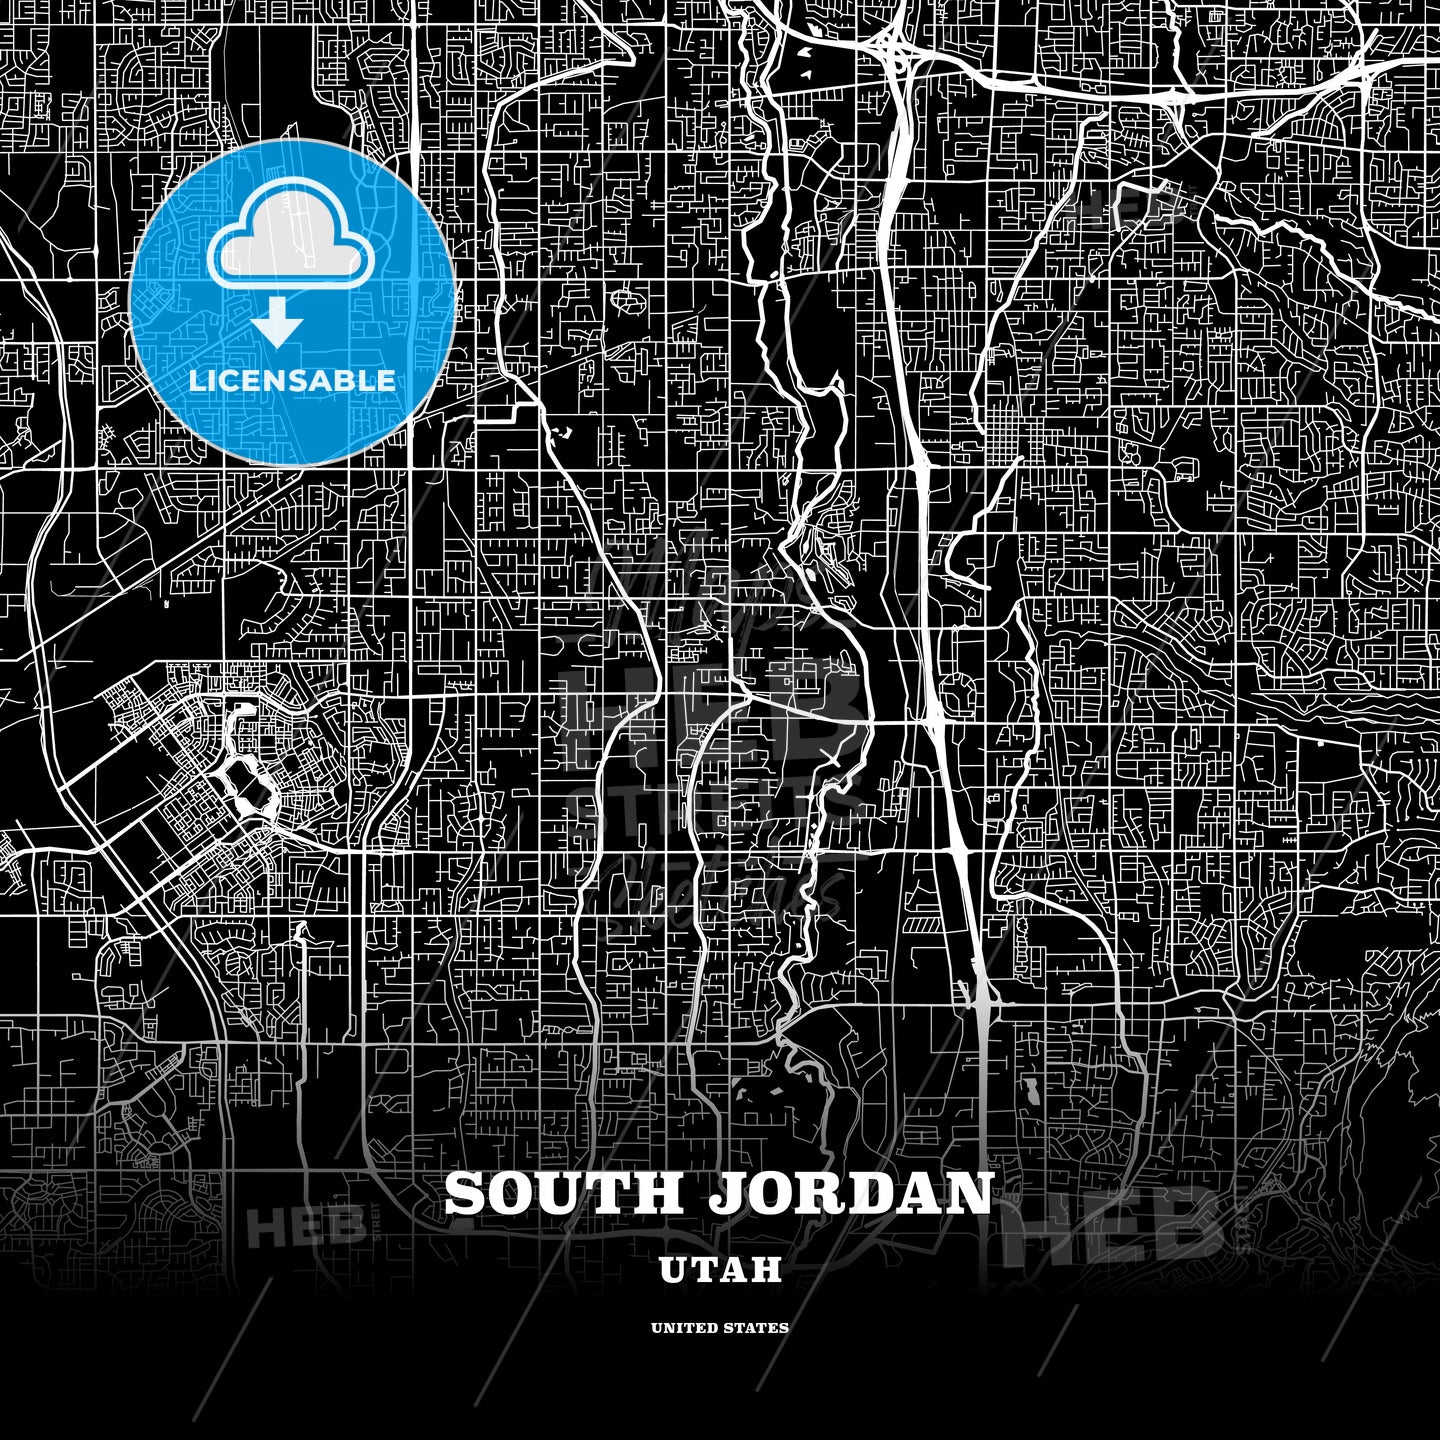 South Jordan, Utah, USA map